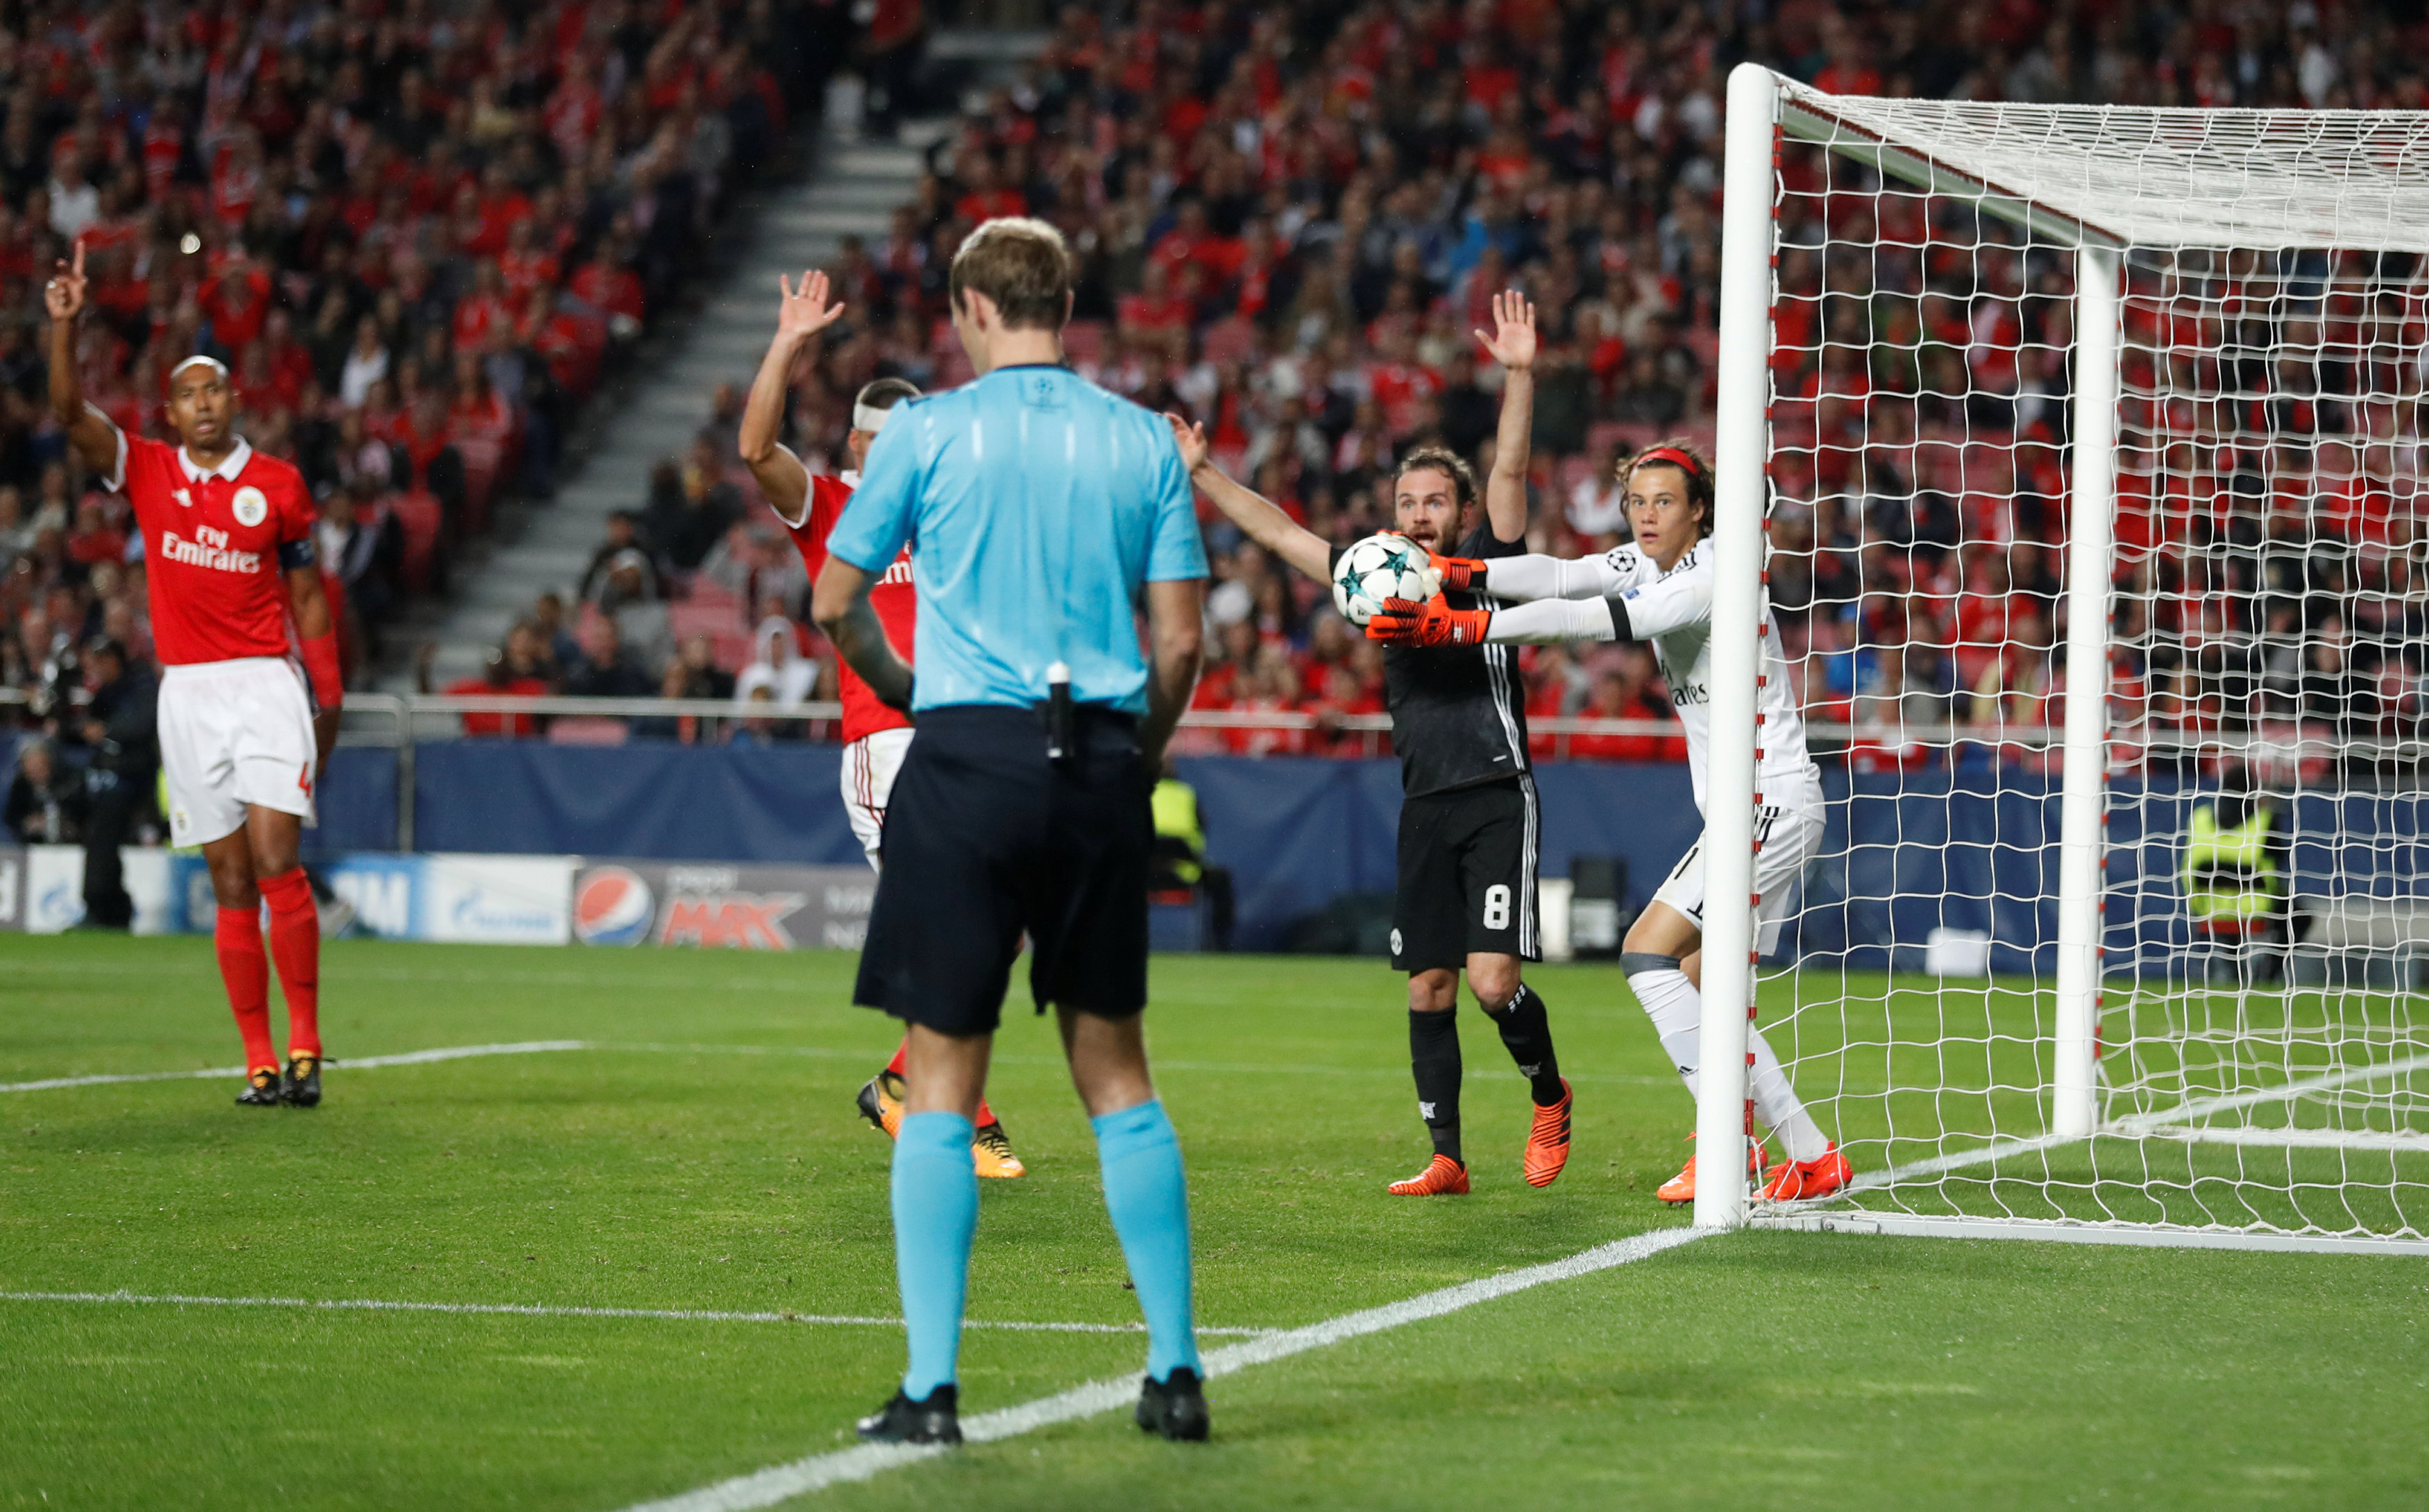 Dù Svilar nhanh chân bước ra khỏi khung thành nhưng tình huống bóng đi qua vạch vôi quá rõ ràng khiến Benfica không thể tránh khỏi bàn thua. Ảnh: REUTERS